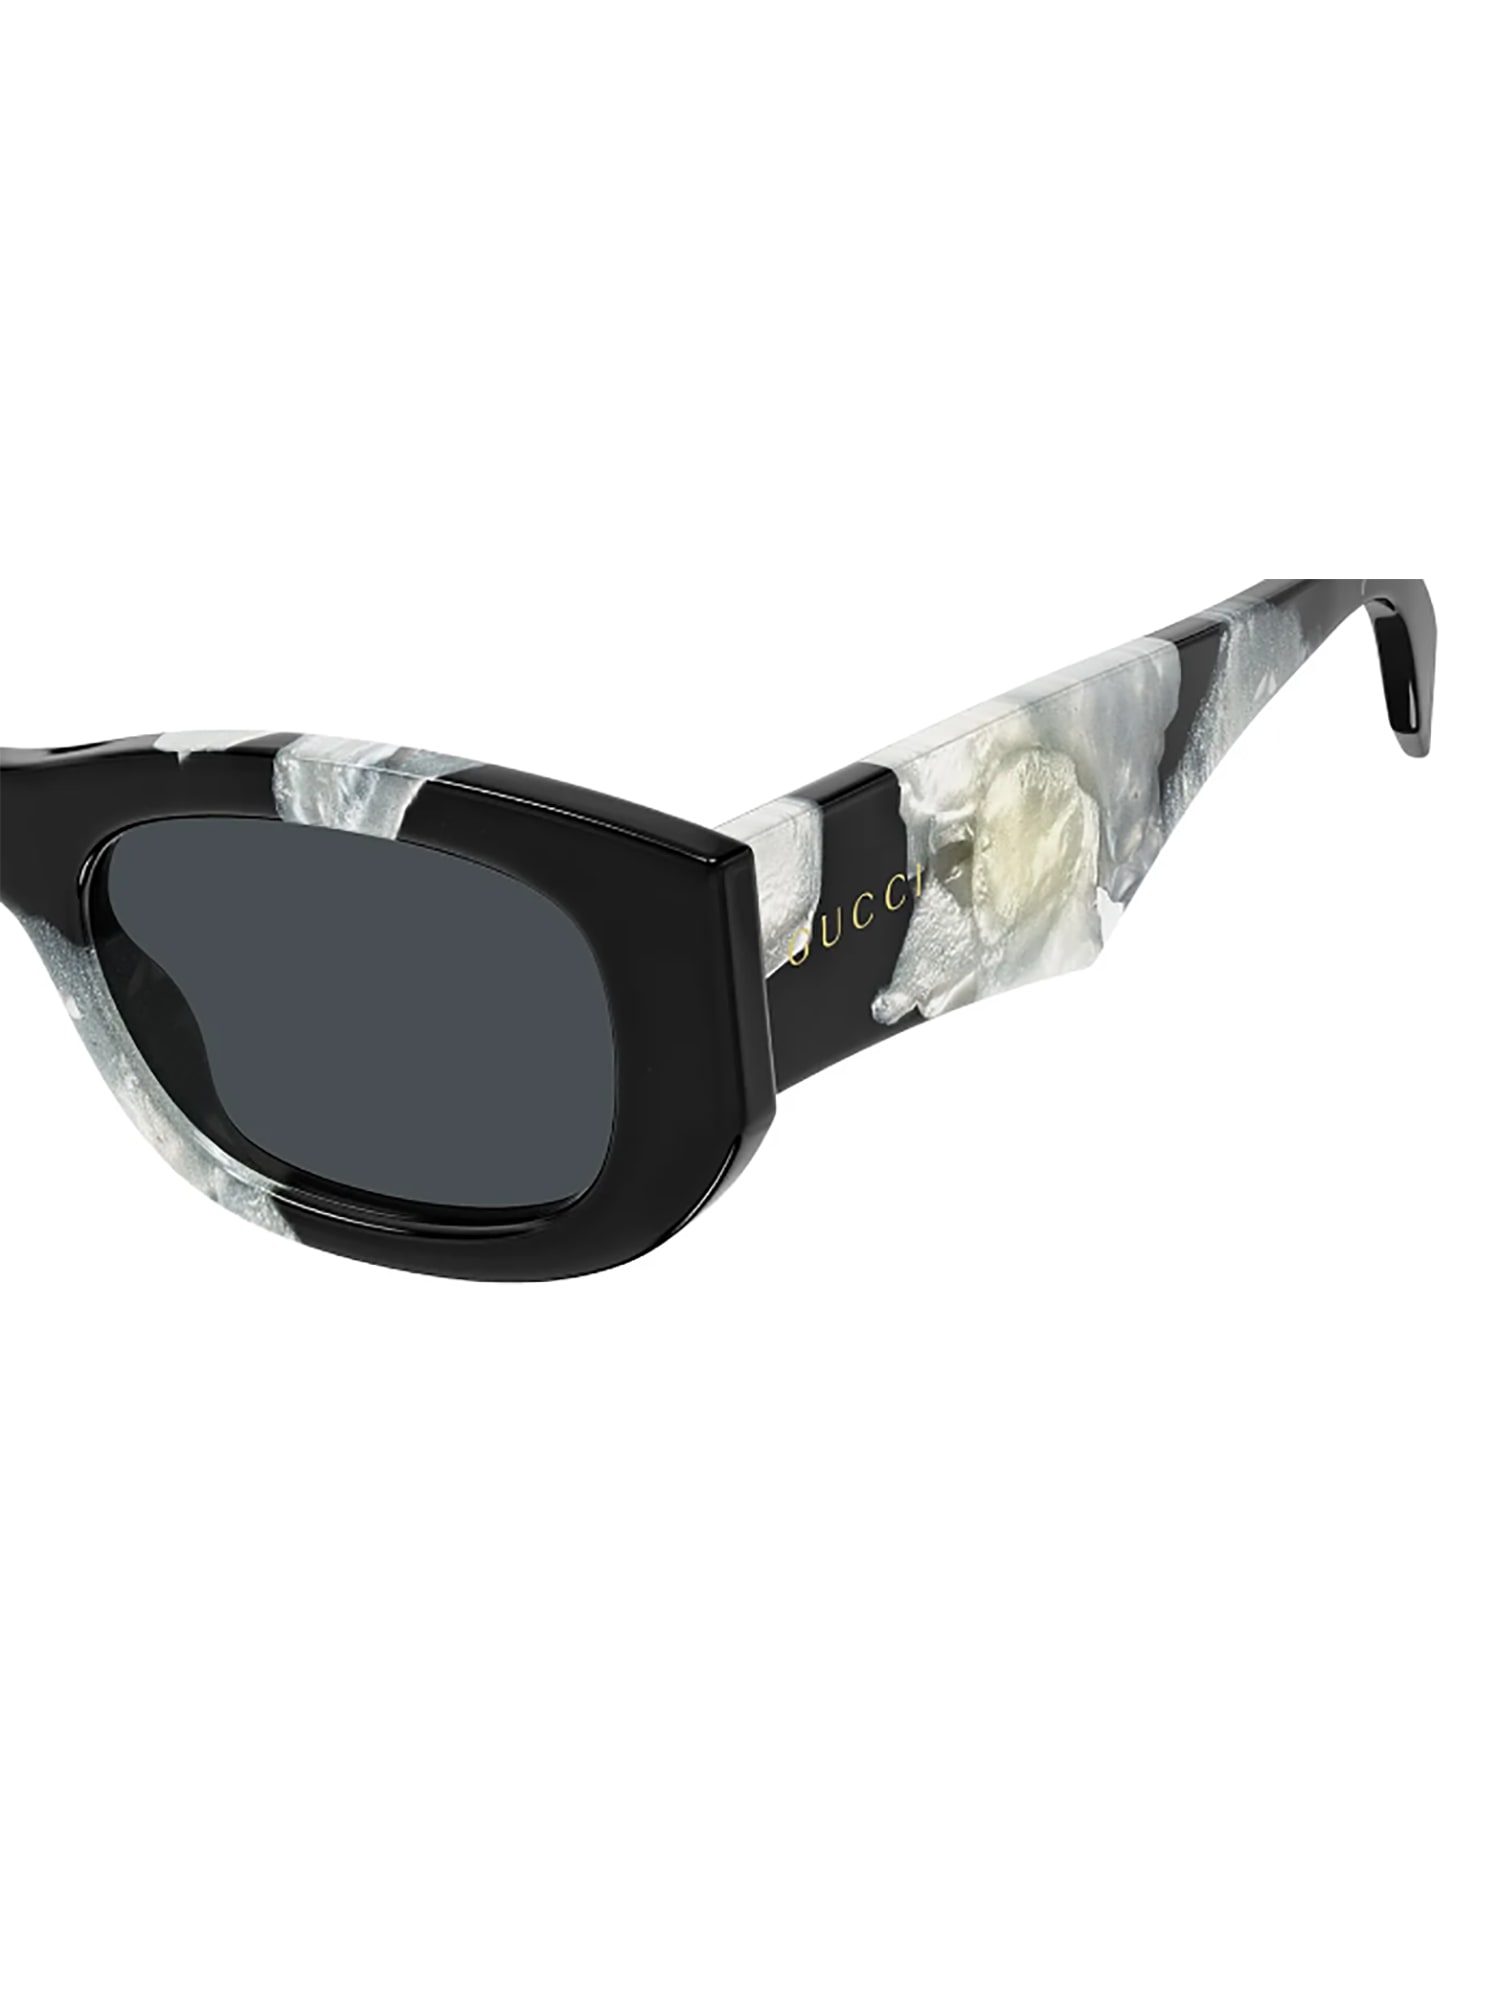 Shop Gucci Gg1627s Sunglasses In Black Black Grey